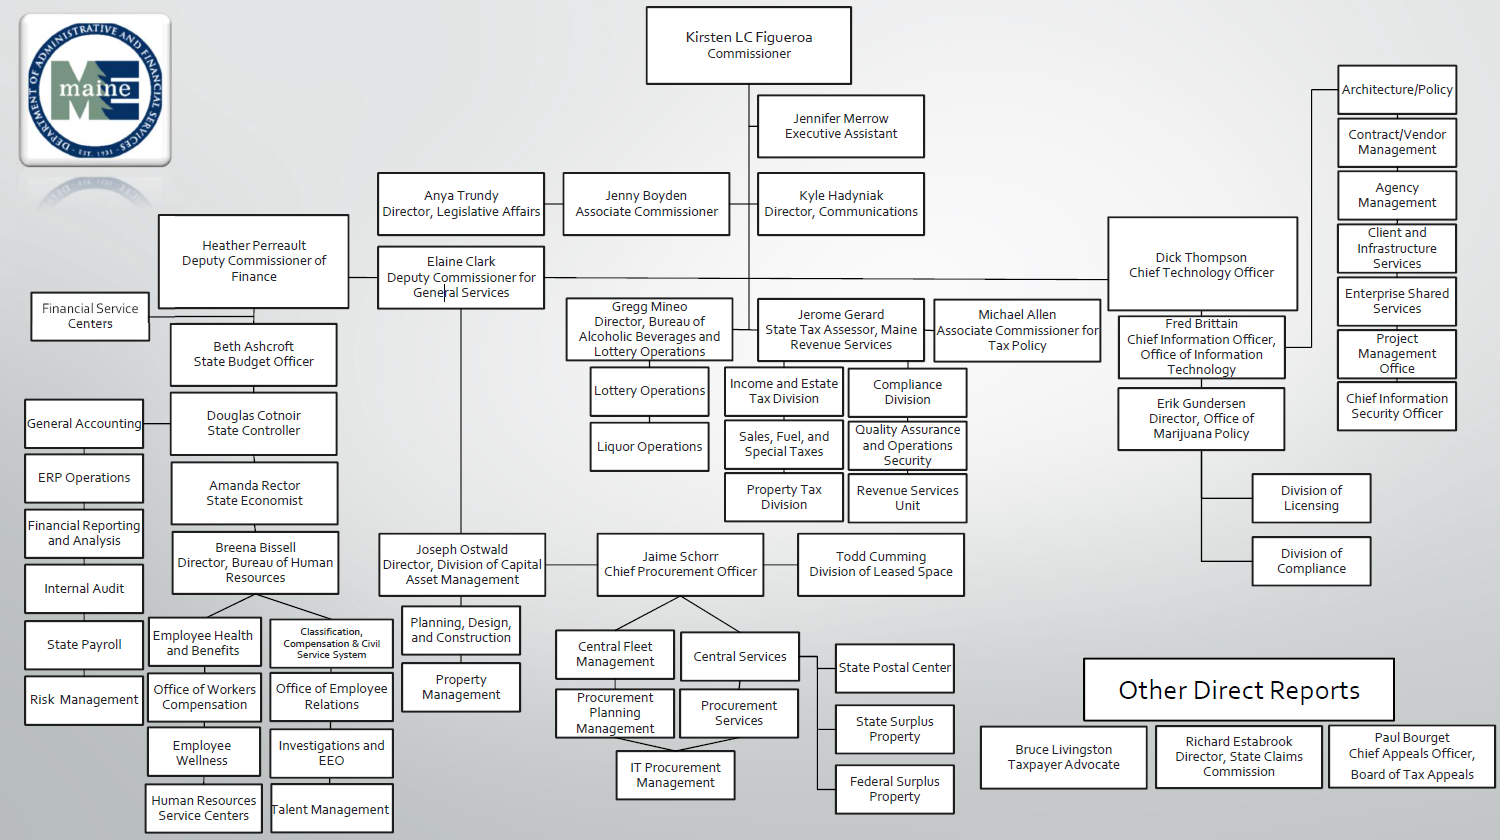 DAFS Organizational Chart 